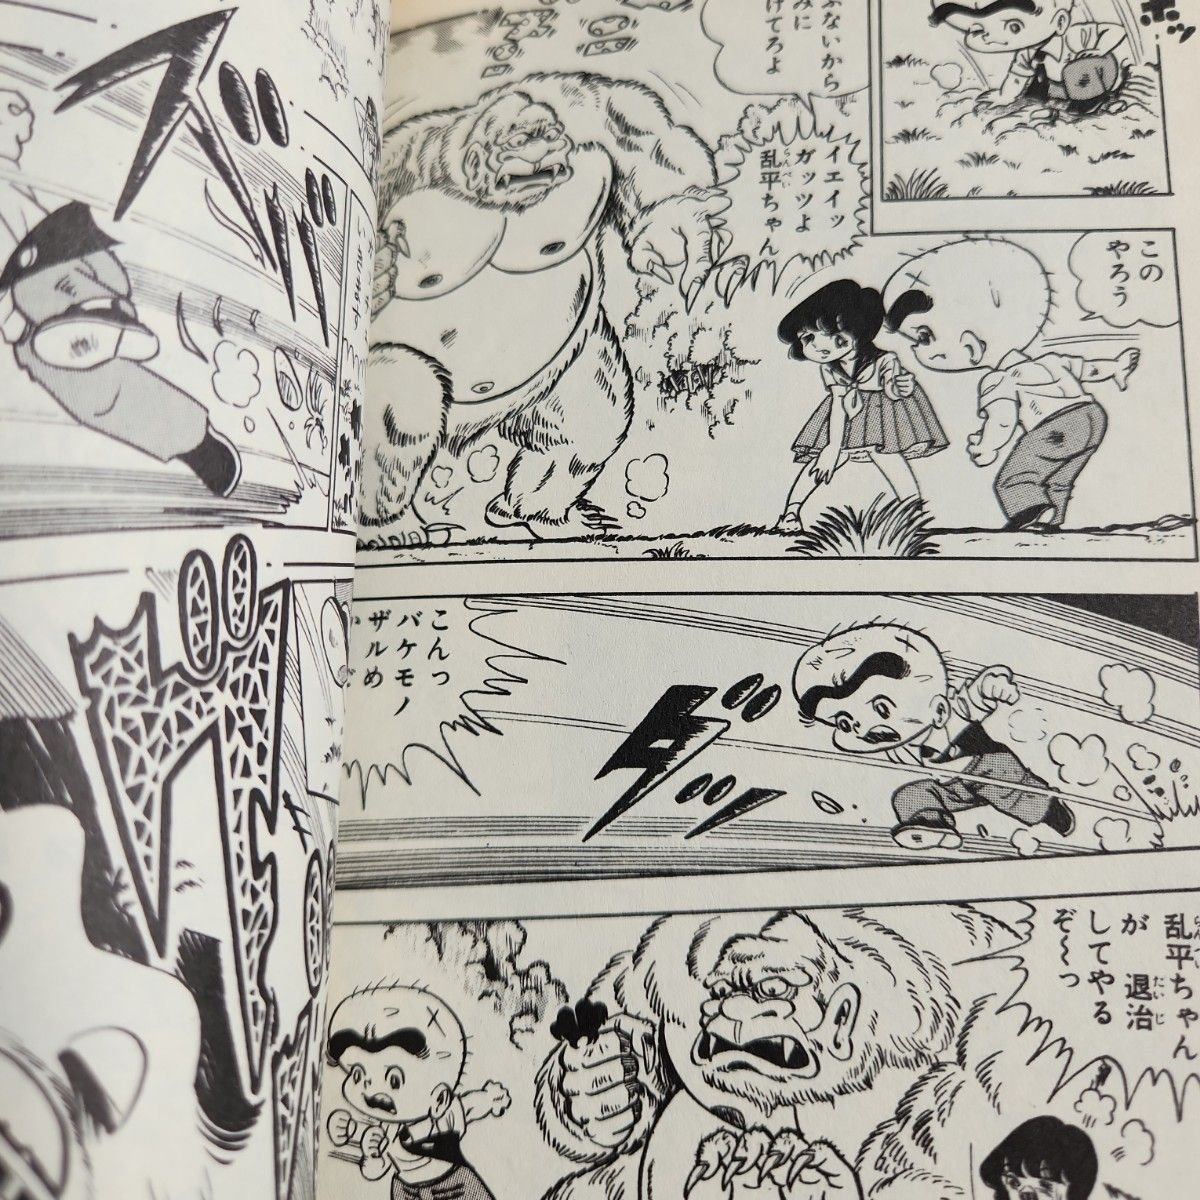 ガッツ乱平　1巻　4巻から15巻初版第一刷発行　百里あきら　少年ジャンプコミック